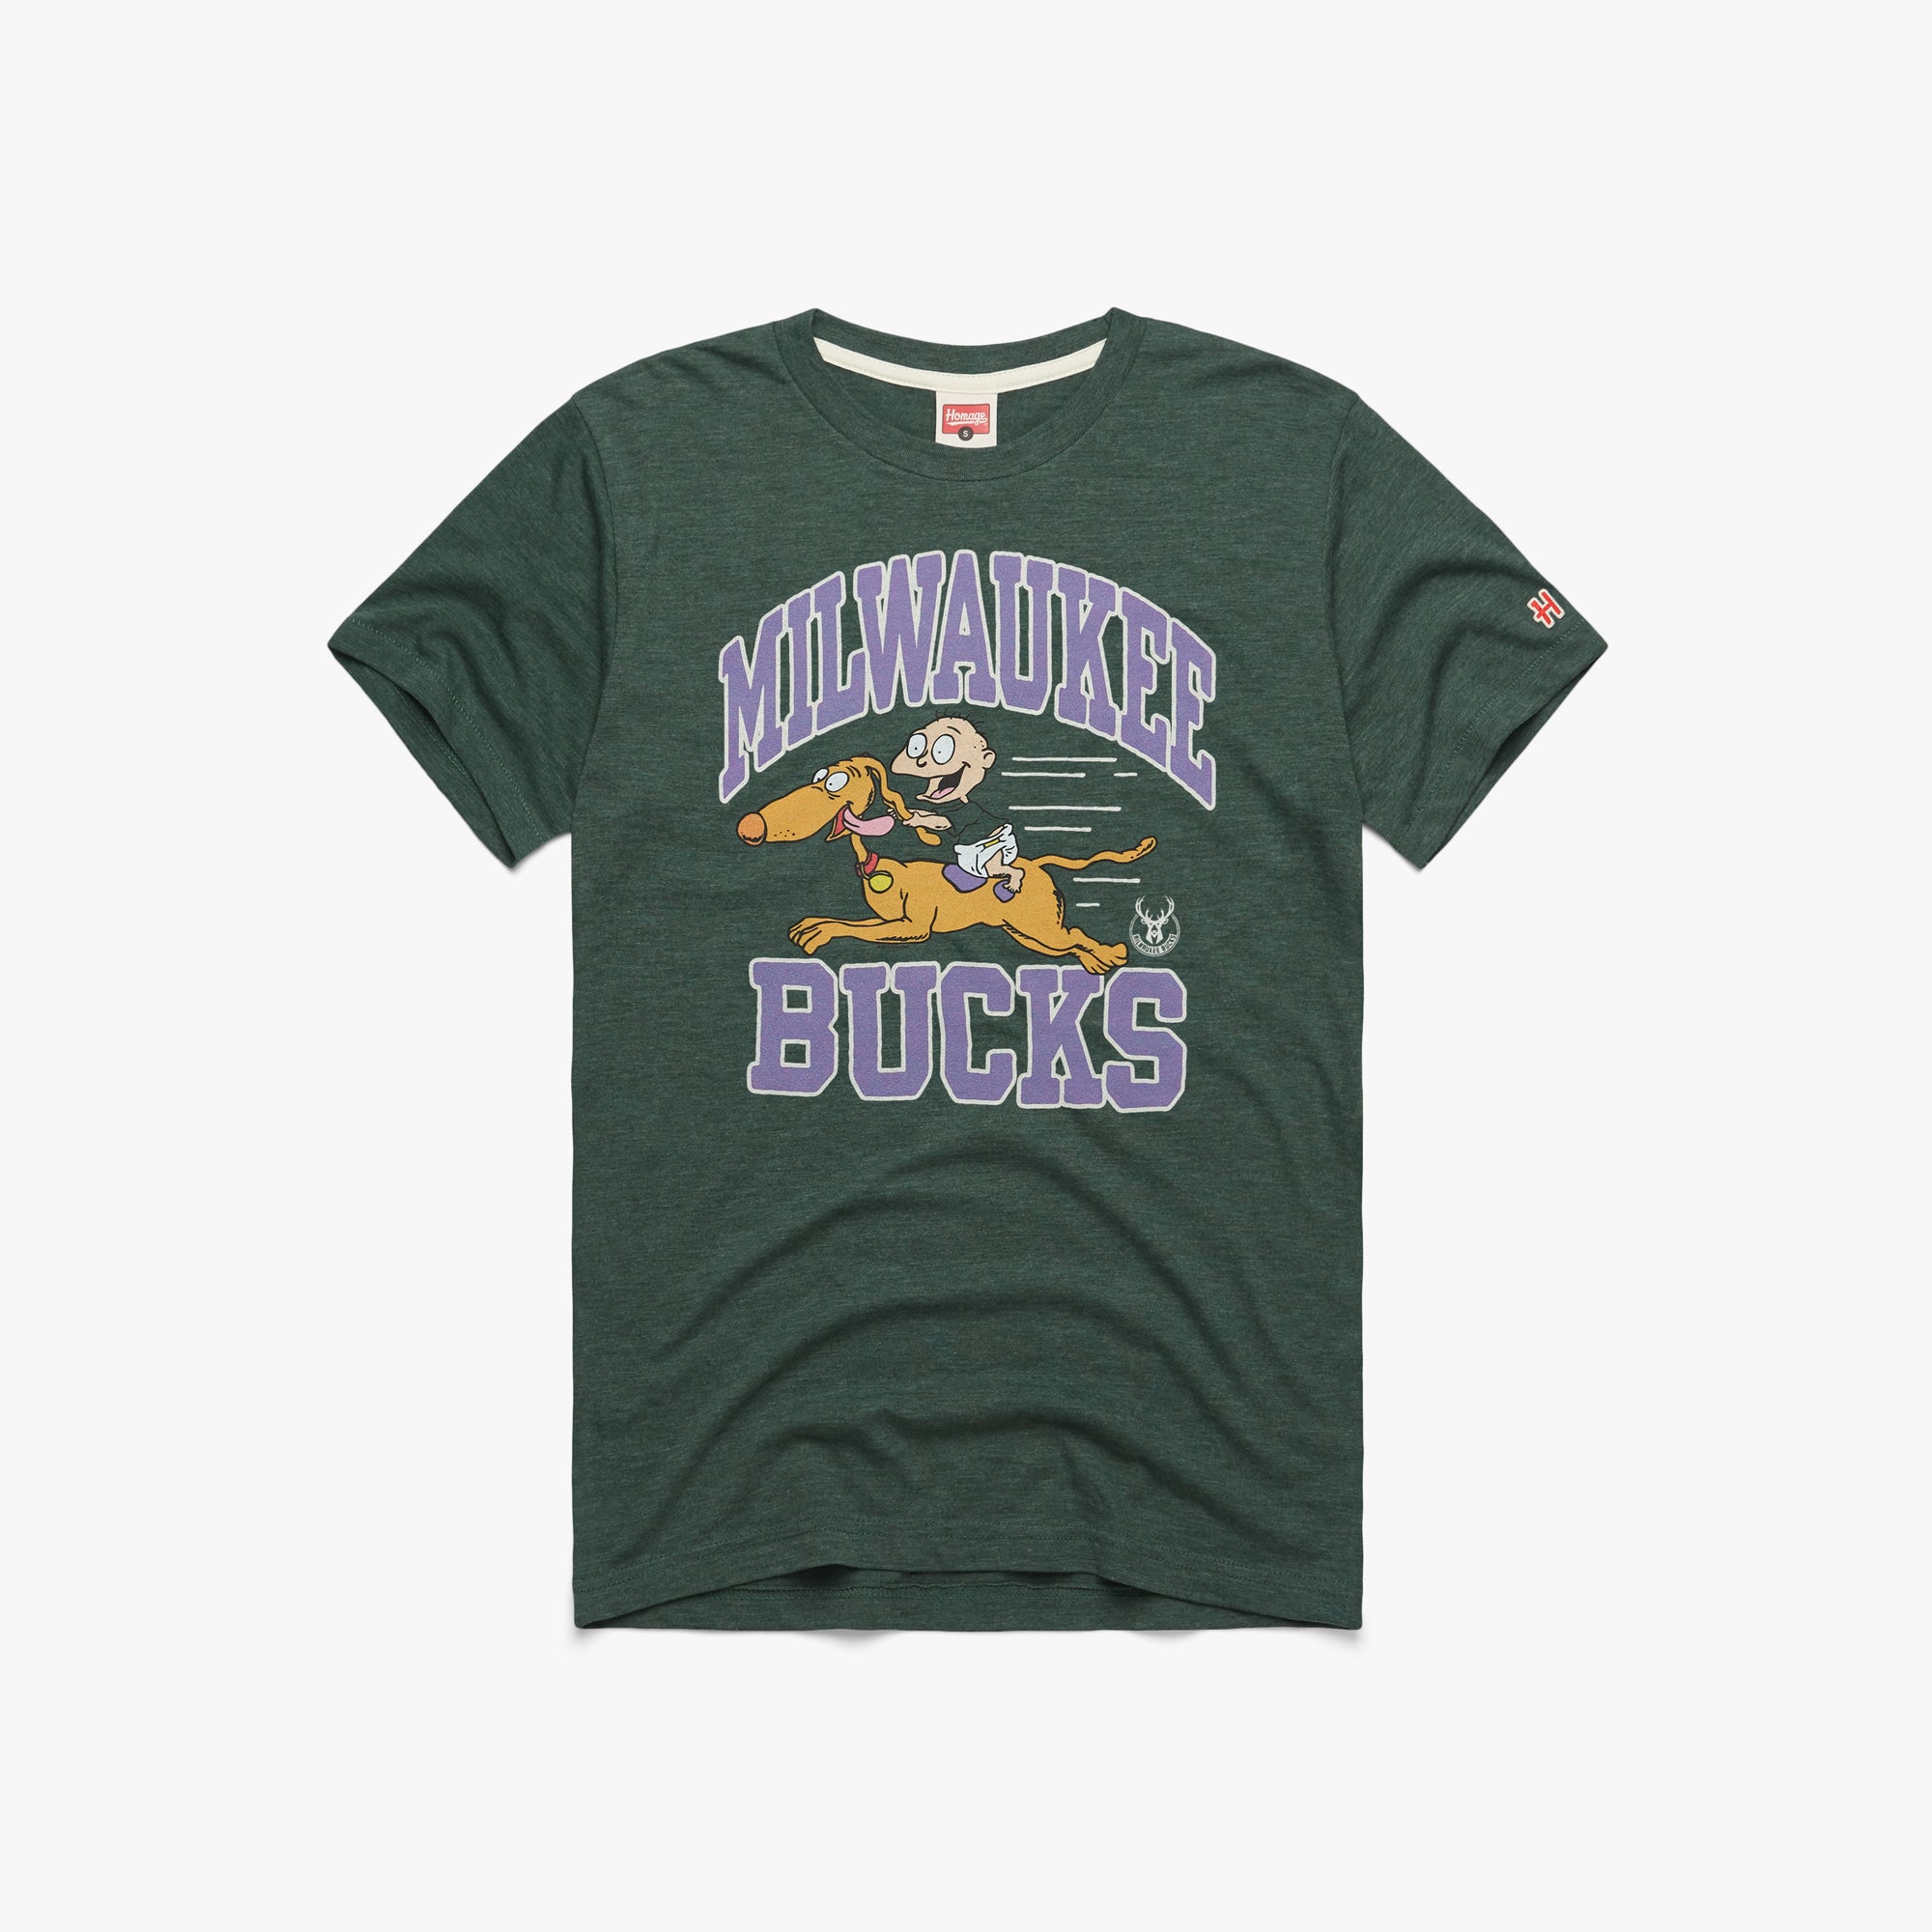 Milwaukee Basketball Shirt, Vintage Nba Basketball Long Sleeve